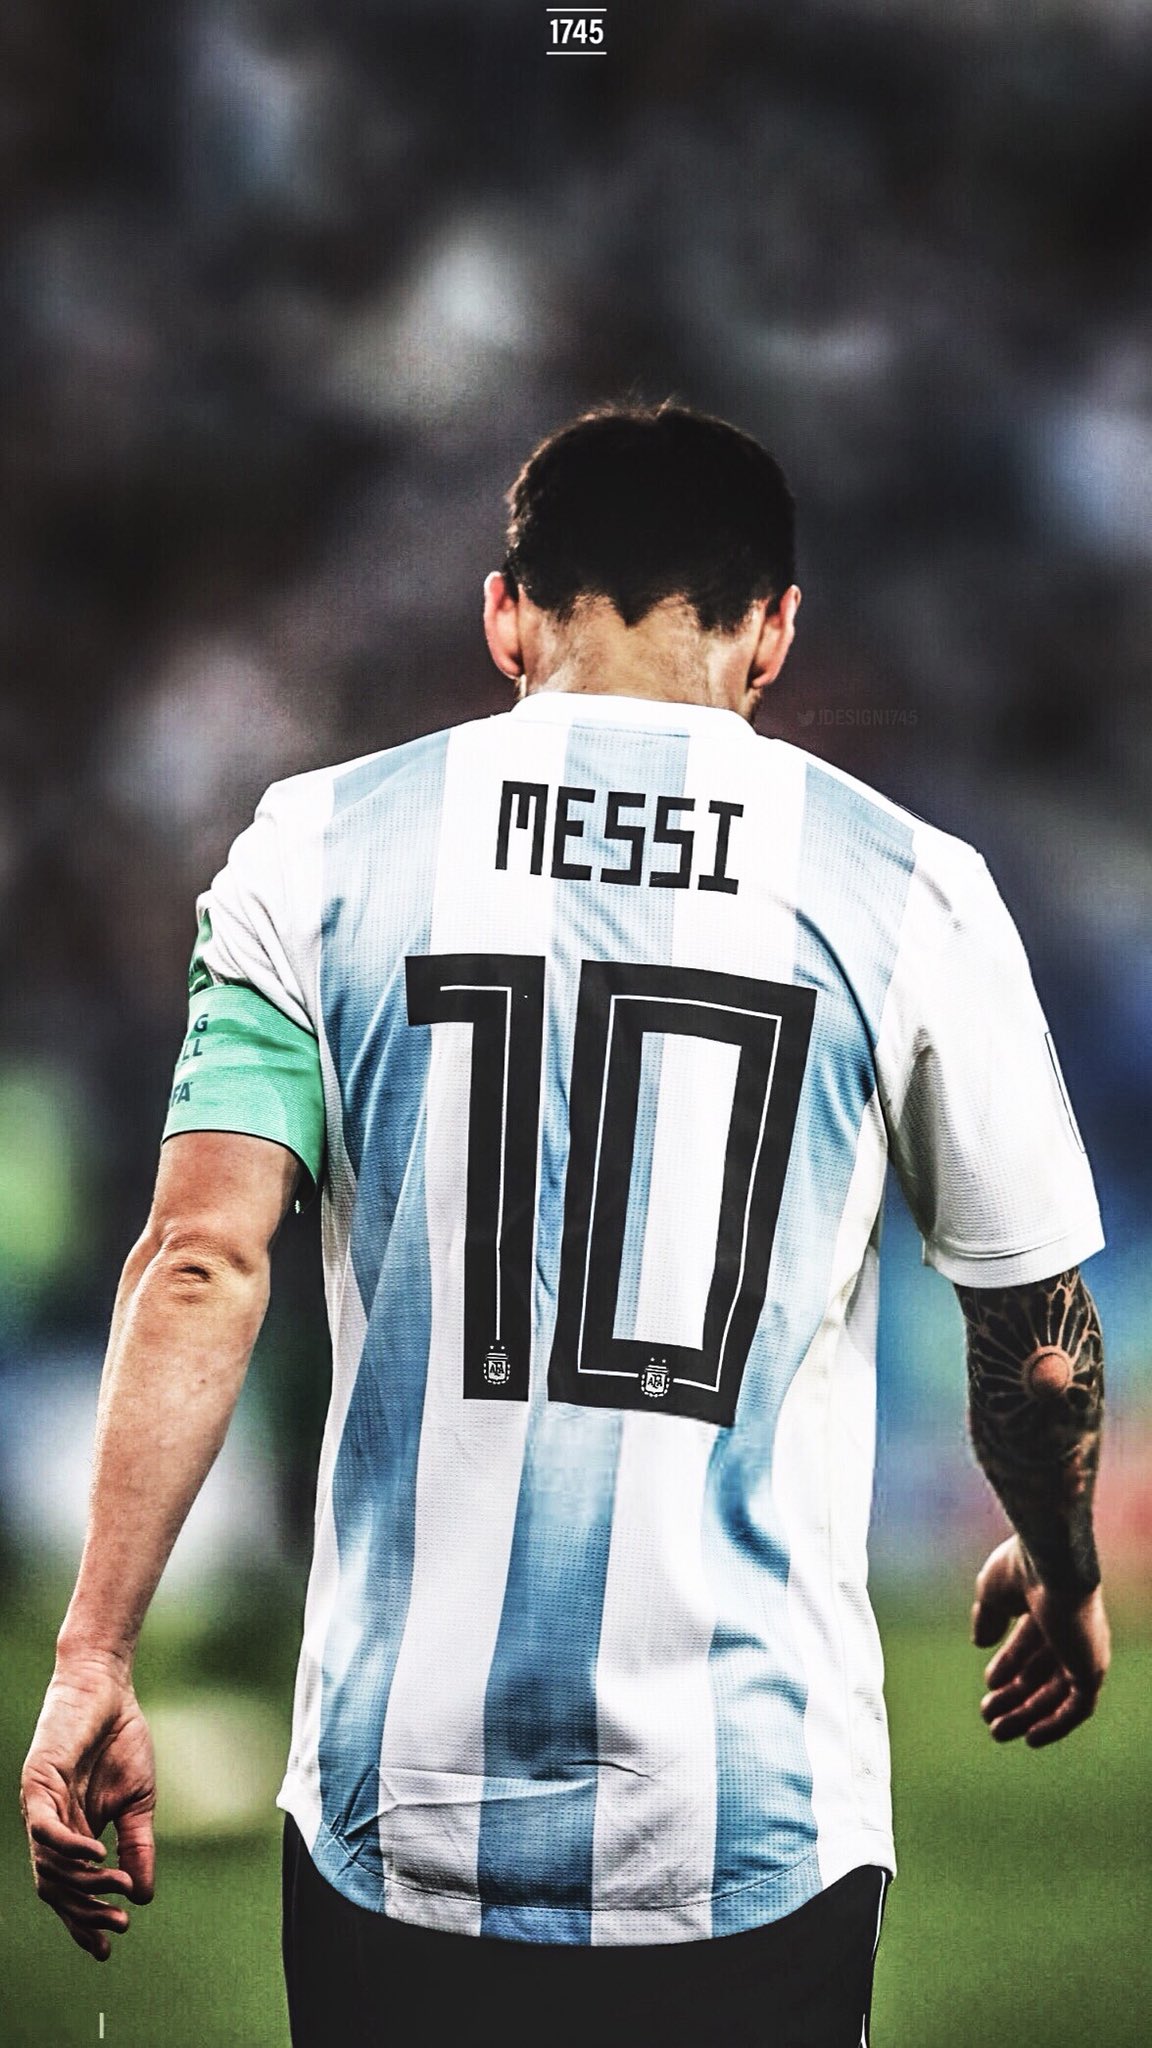 Nếu bạn là một fan của đội tuyển bóng đá Argentina, hãy để hình nền điện thoại của bạn thể hiện điều đó. Hình nền này không chỉ tôn vinh đội tuyển mà còn chứa đựng một chút tinh thần của sự đoàn kết và sự kiên trì trong thể thao.